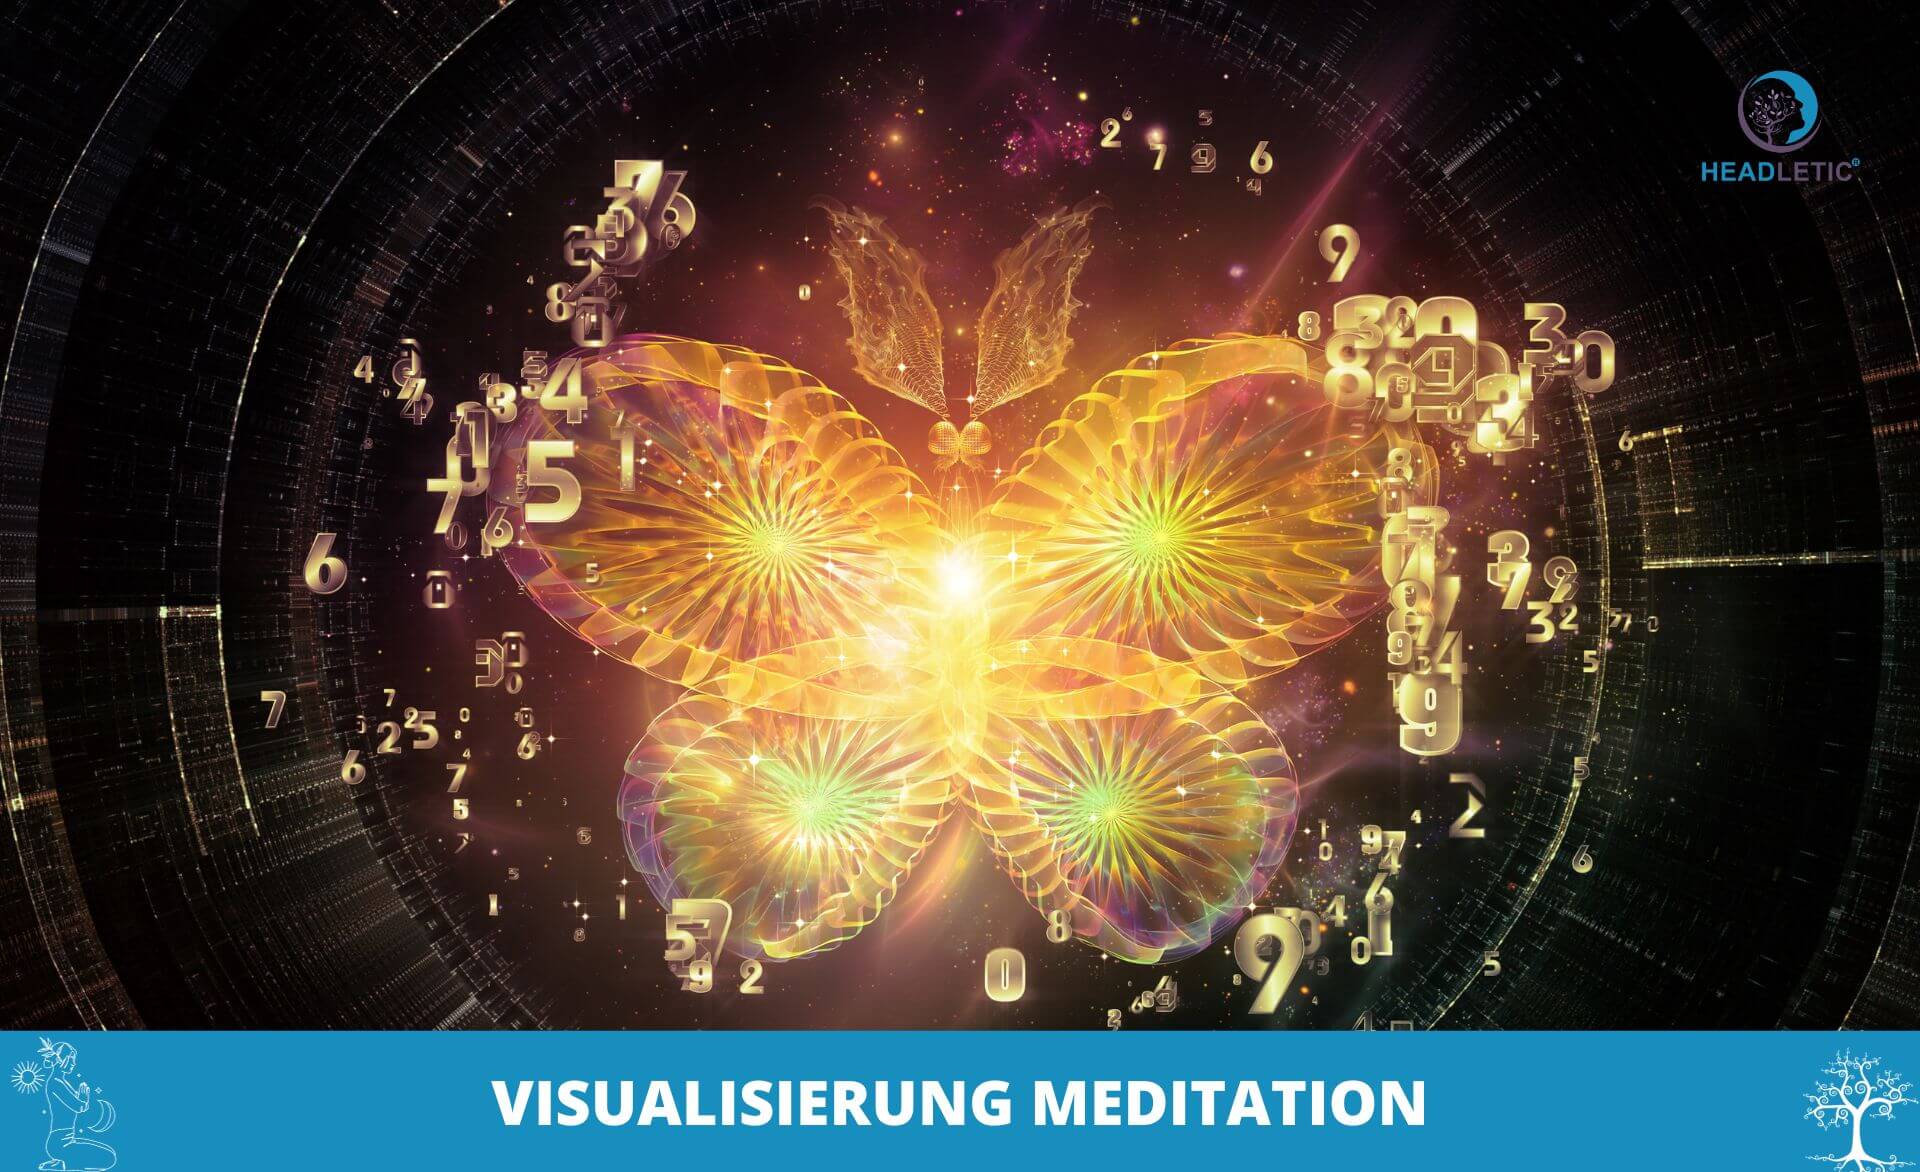 Meditation visualisieren - Meditation visualisieren - Meditation visualisieren - Meditation visualisieren - Meditation visualisieren - Meditation visualisieren -.